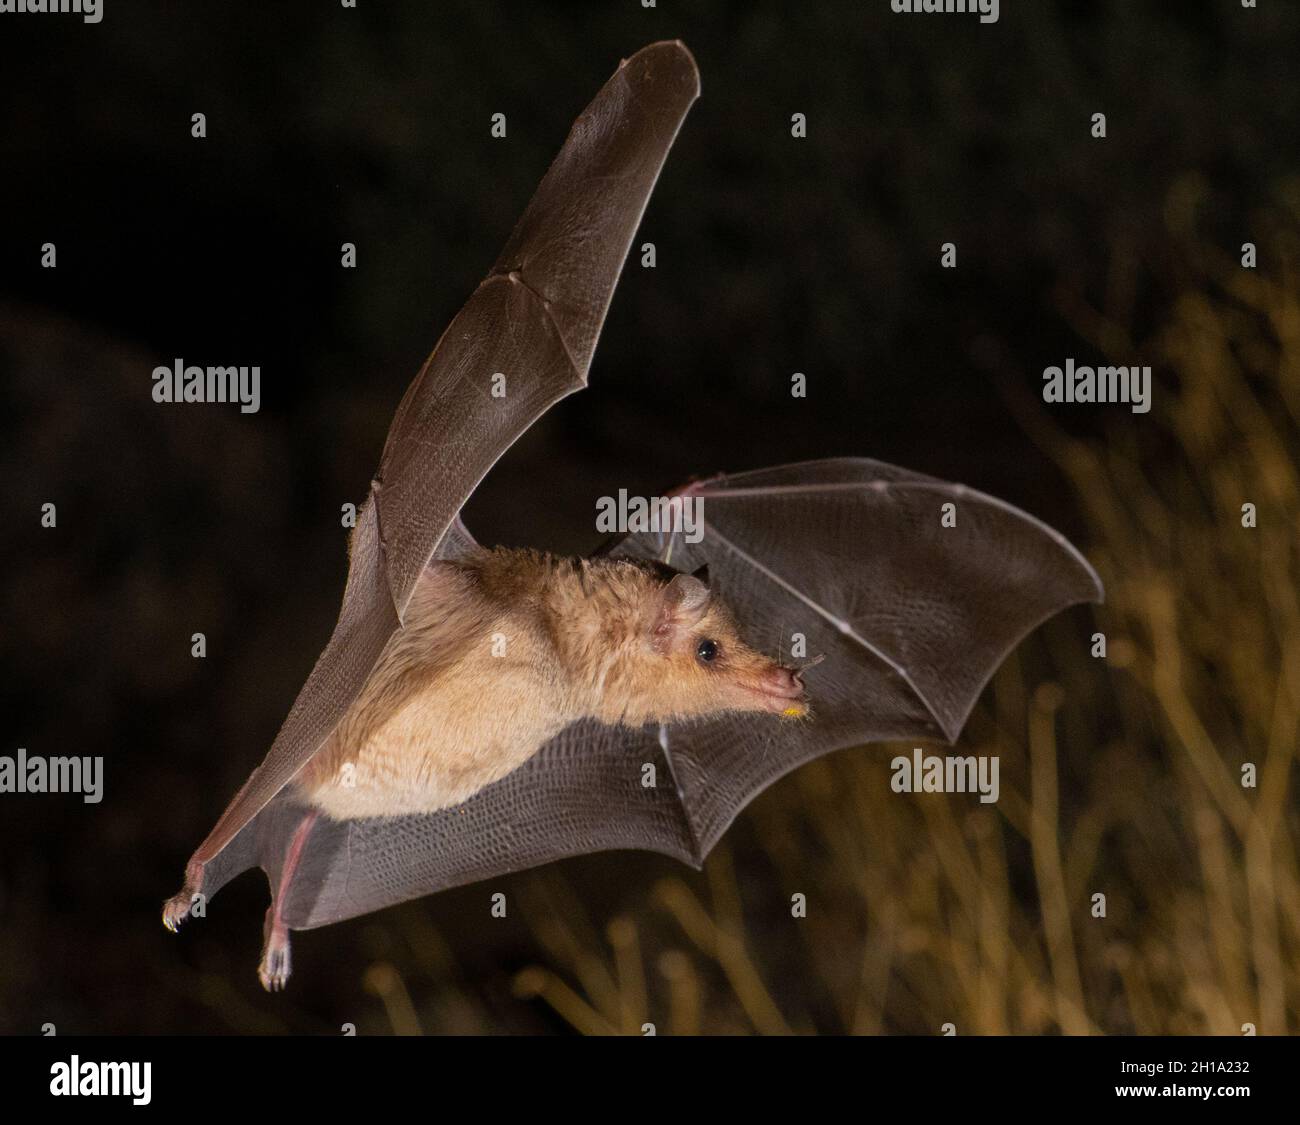 Bat, Marana, near Tucson, Arizona. Stock Photo